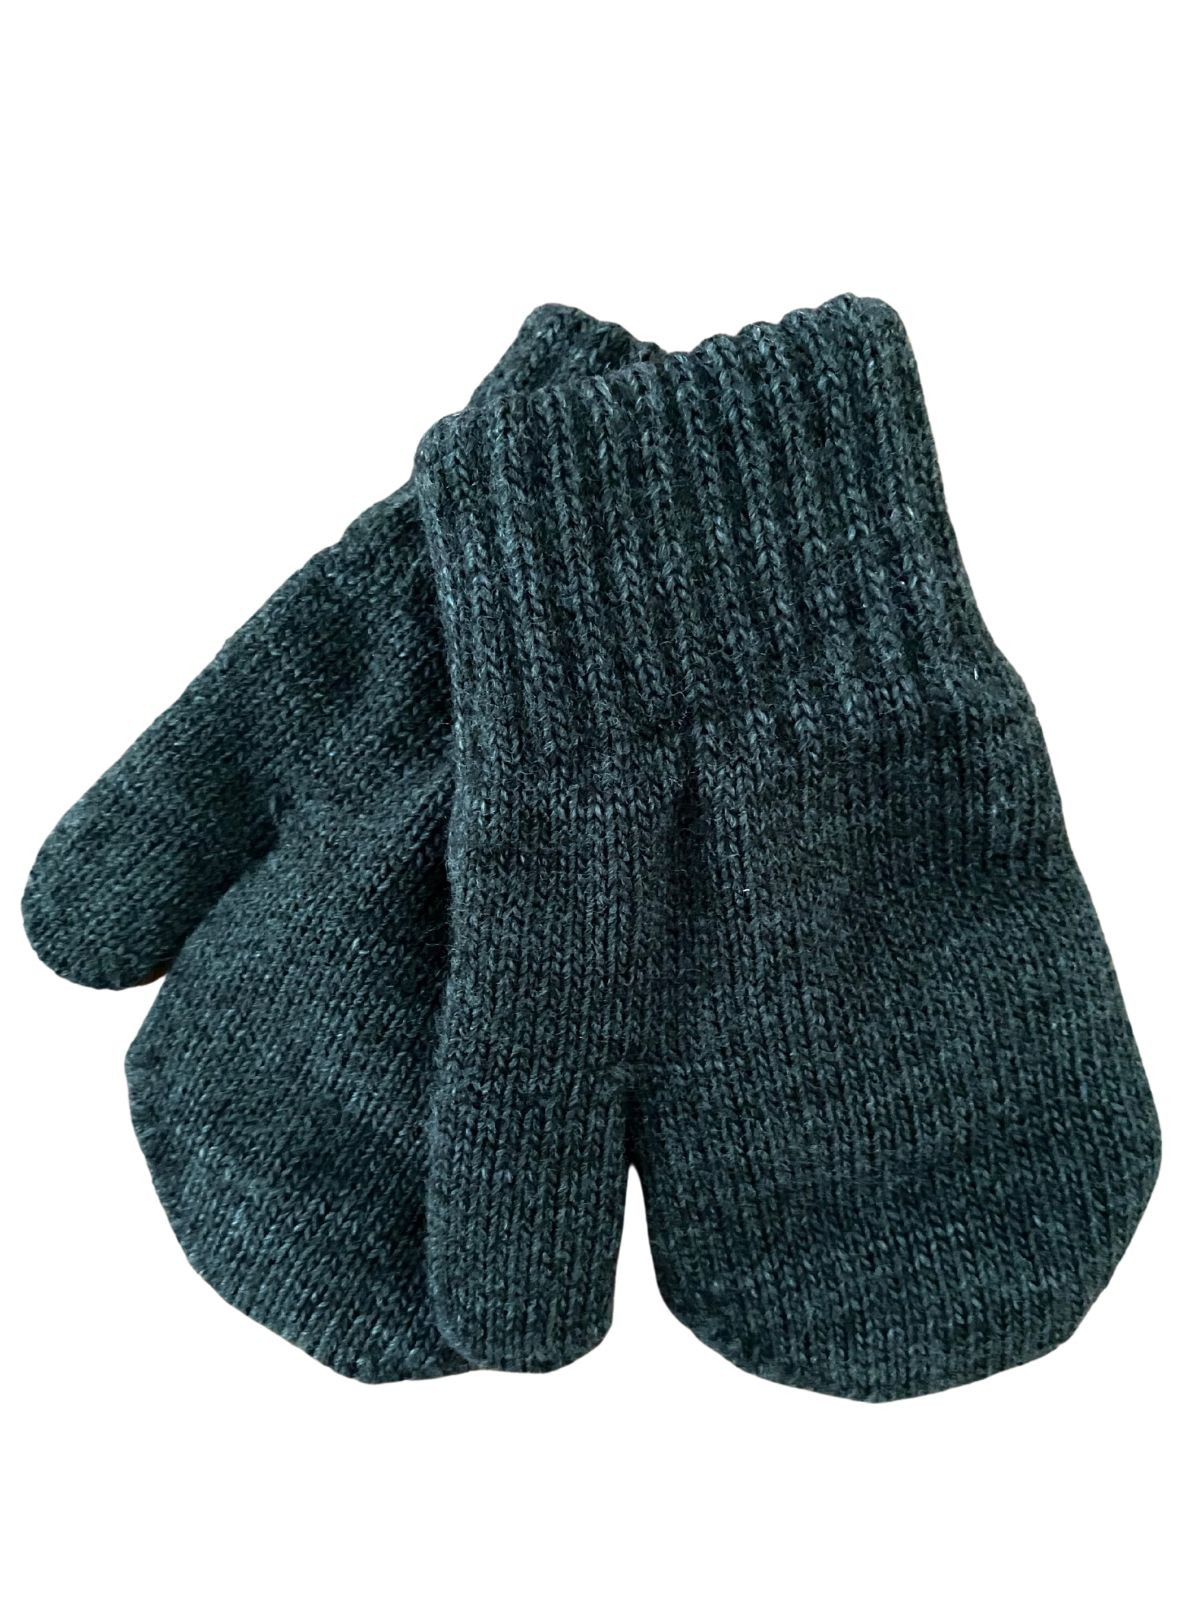 Mitaines tricotés pour enfant 3-5 ans, Basic35_charcoal